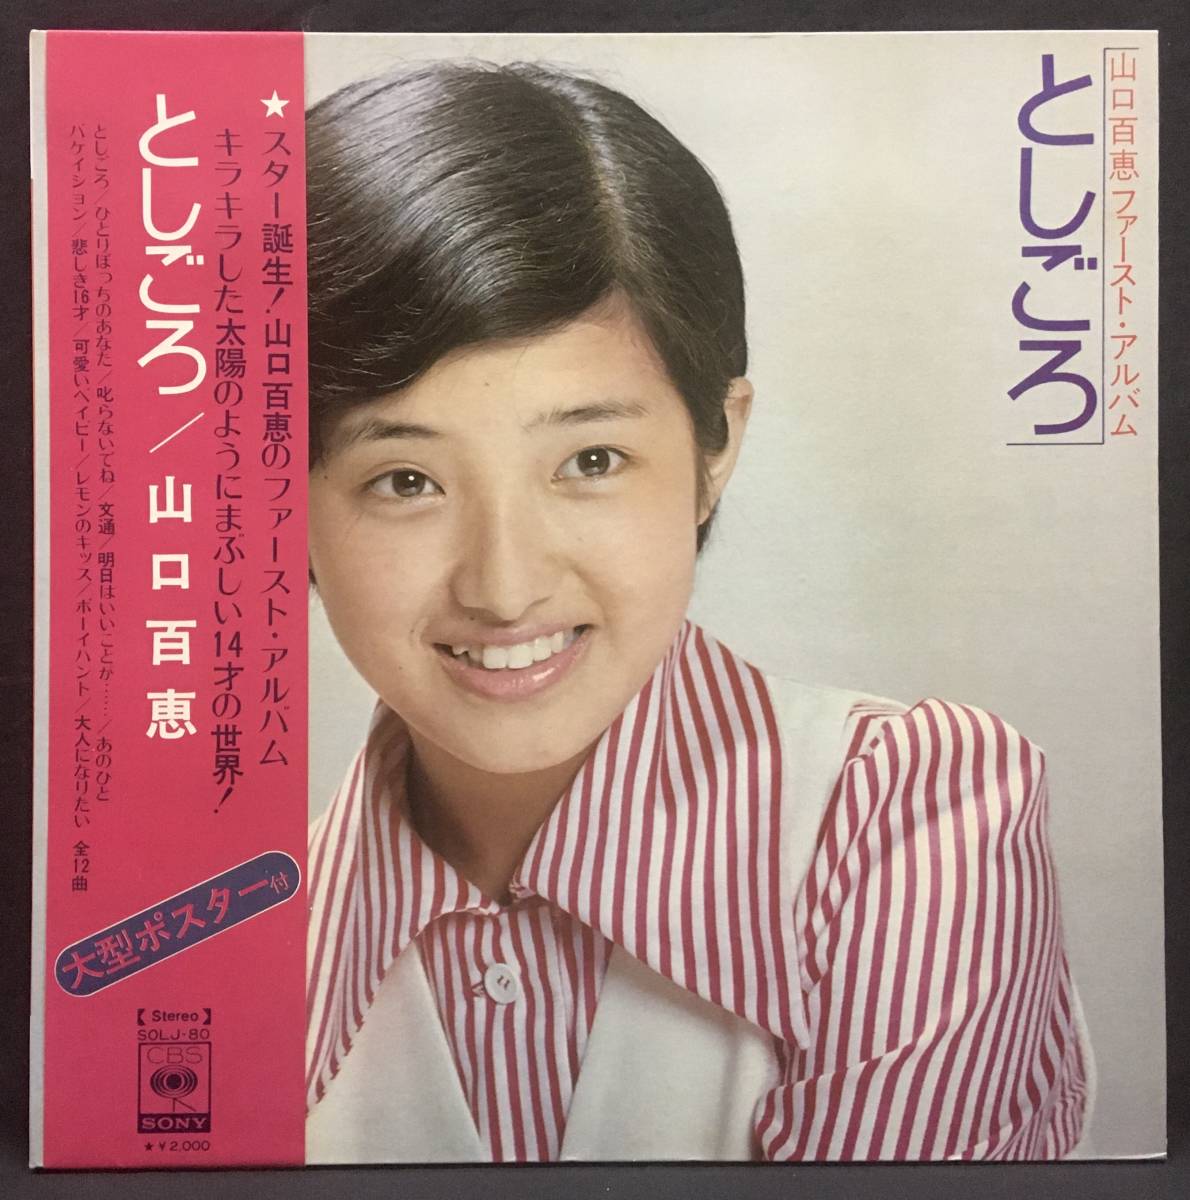 LP постер есть [ Yamaguchi Momoe First * альбом считая около ]Momoe Yamaguchi(70\'s идол kava- поп-музыка )